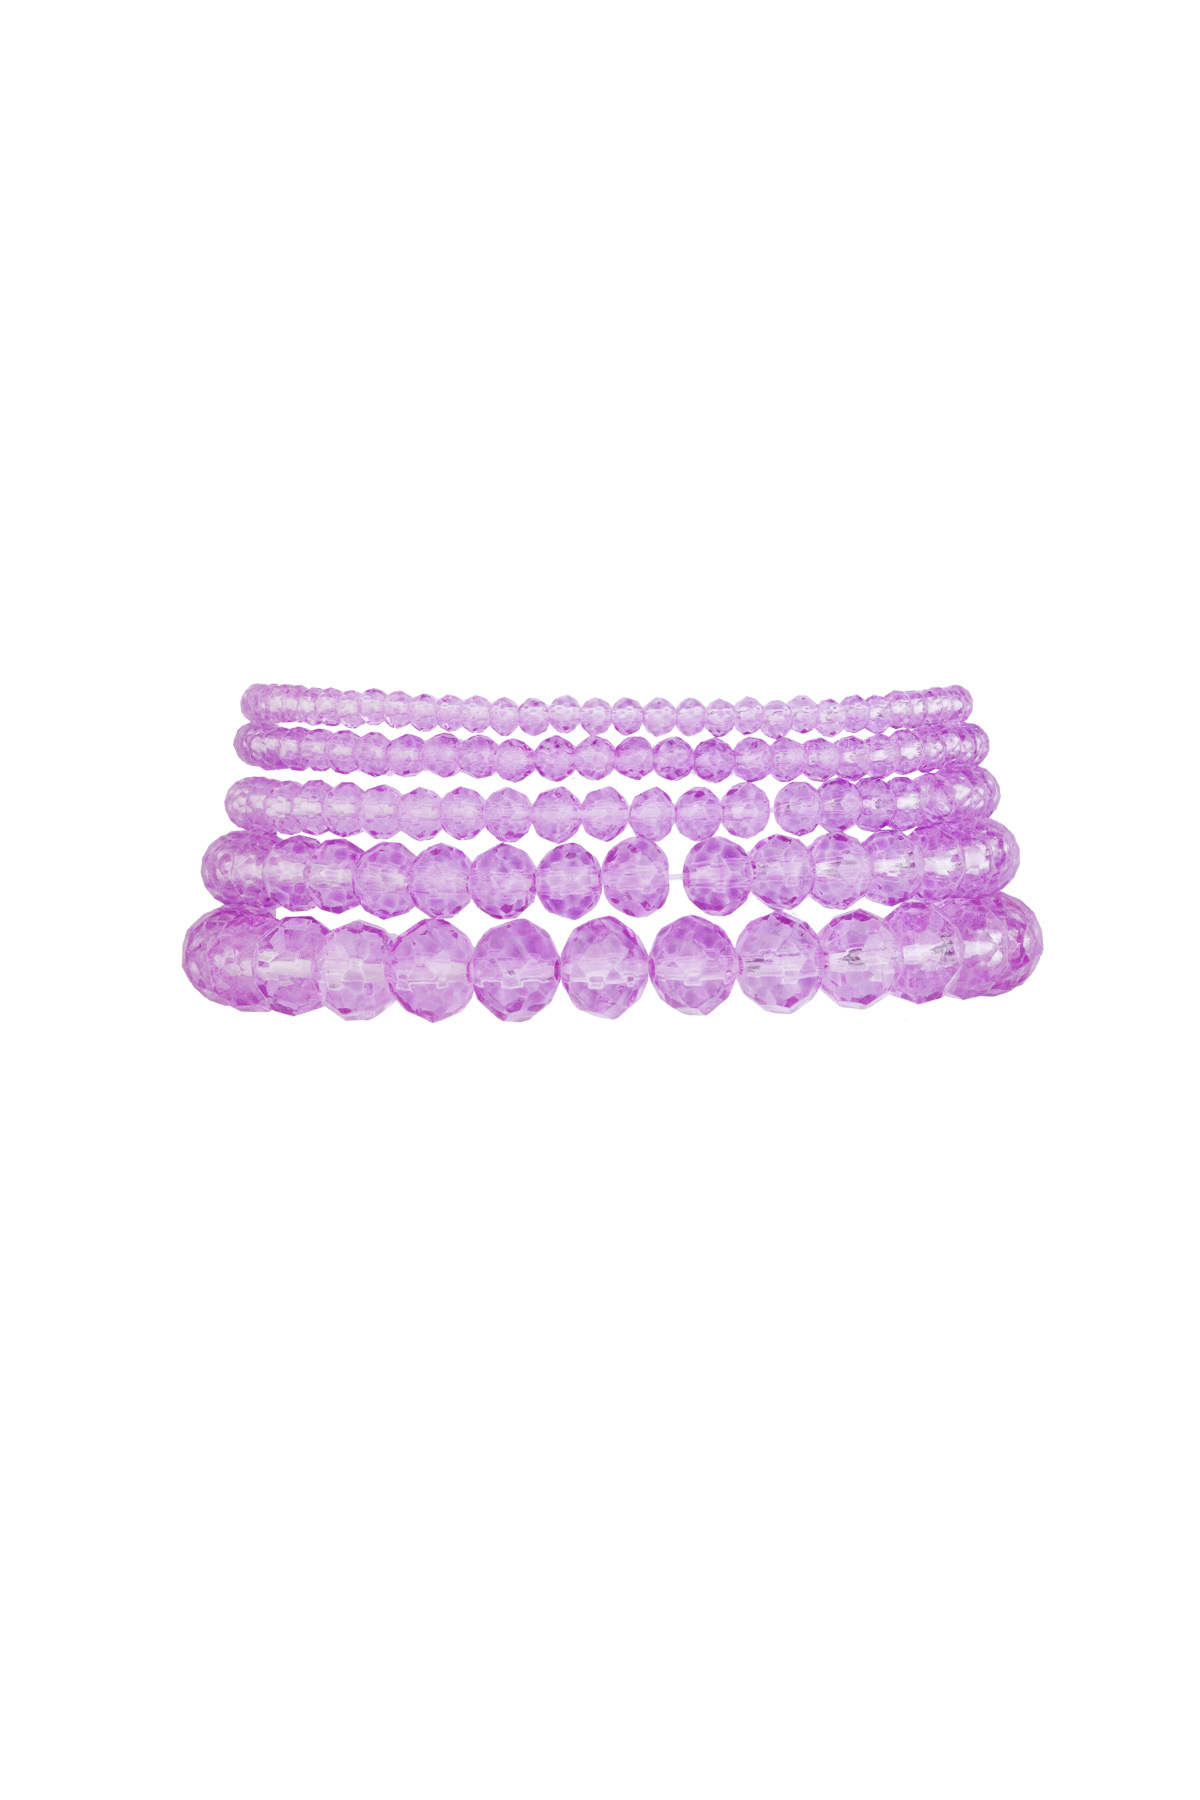 Set van 5 kristal armbanden paars - lichtpaars